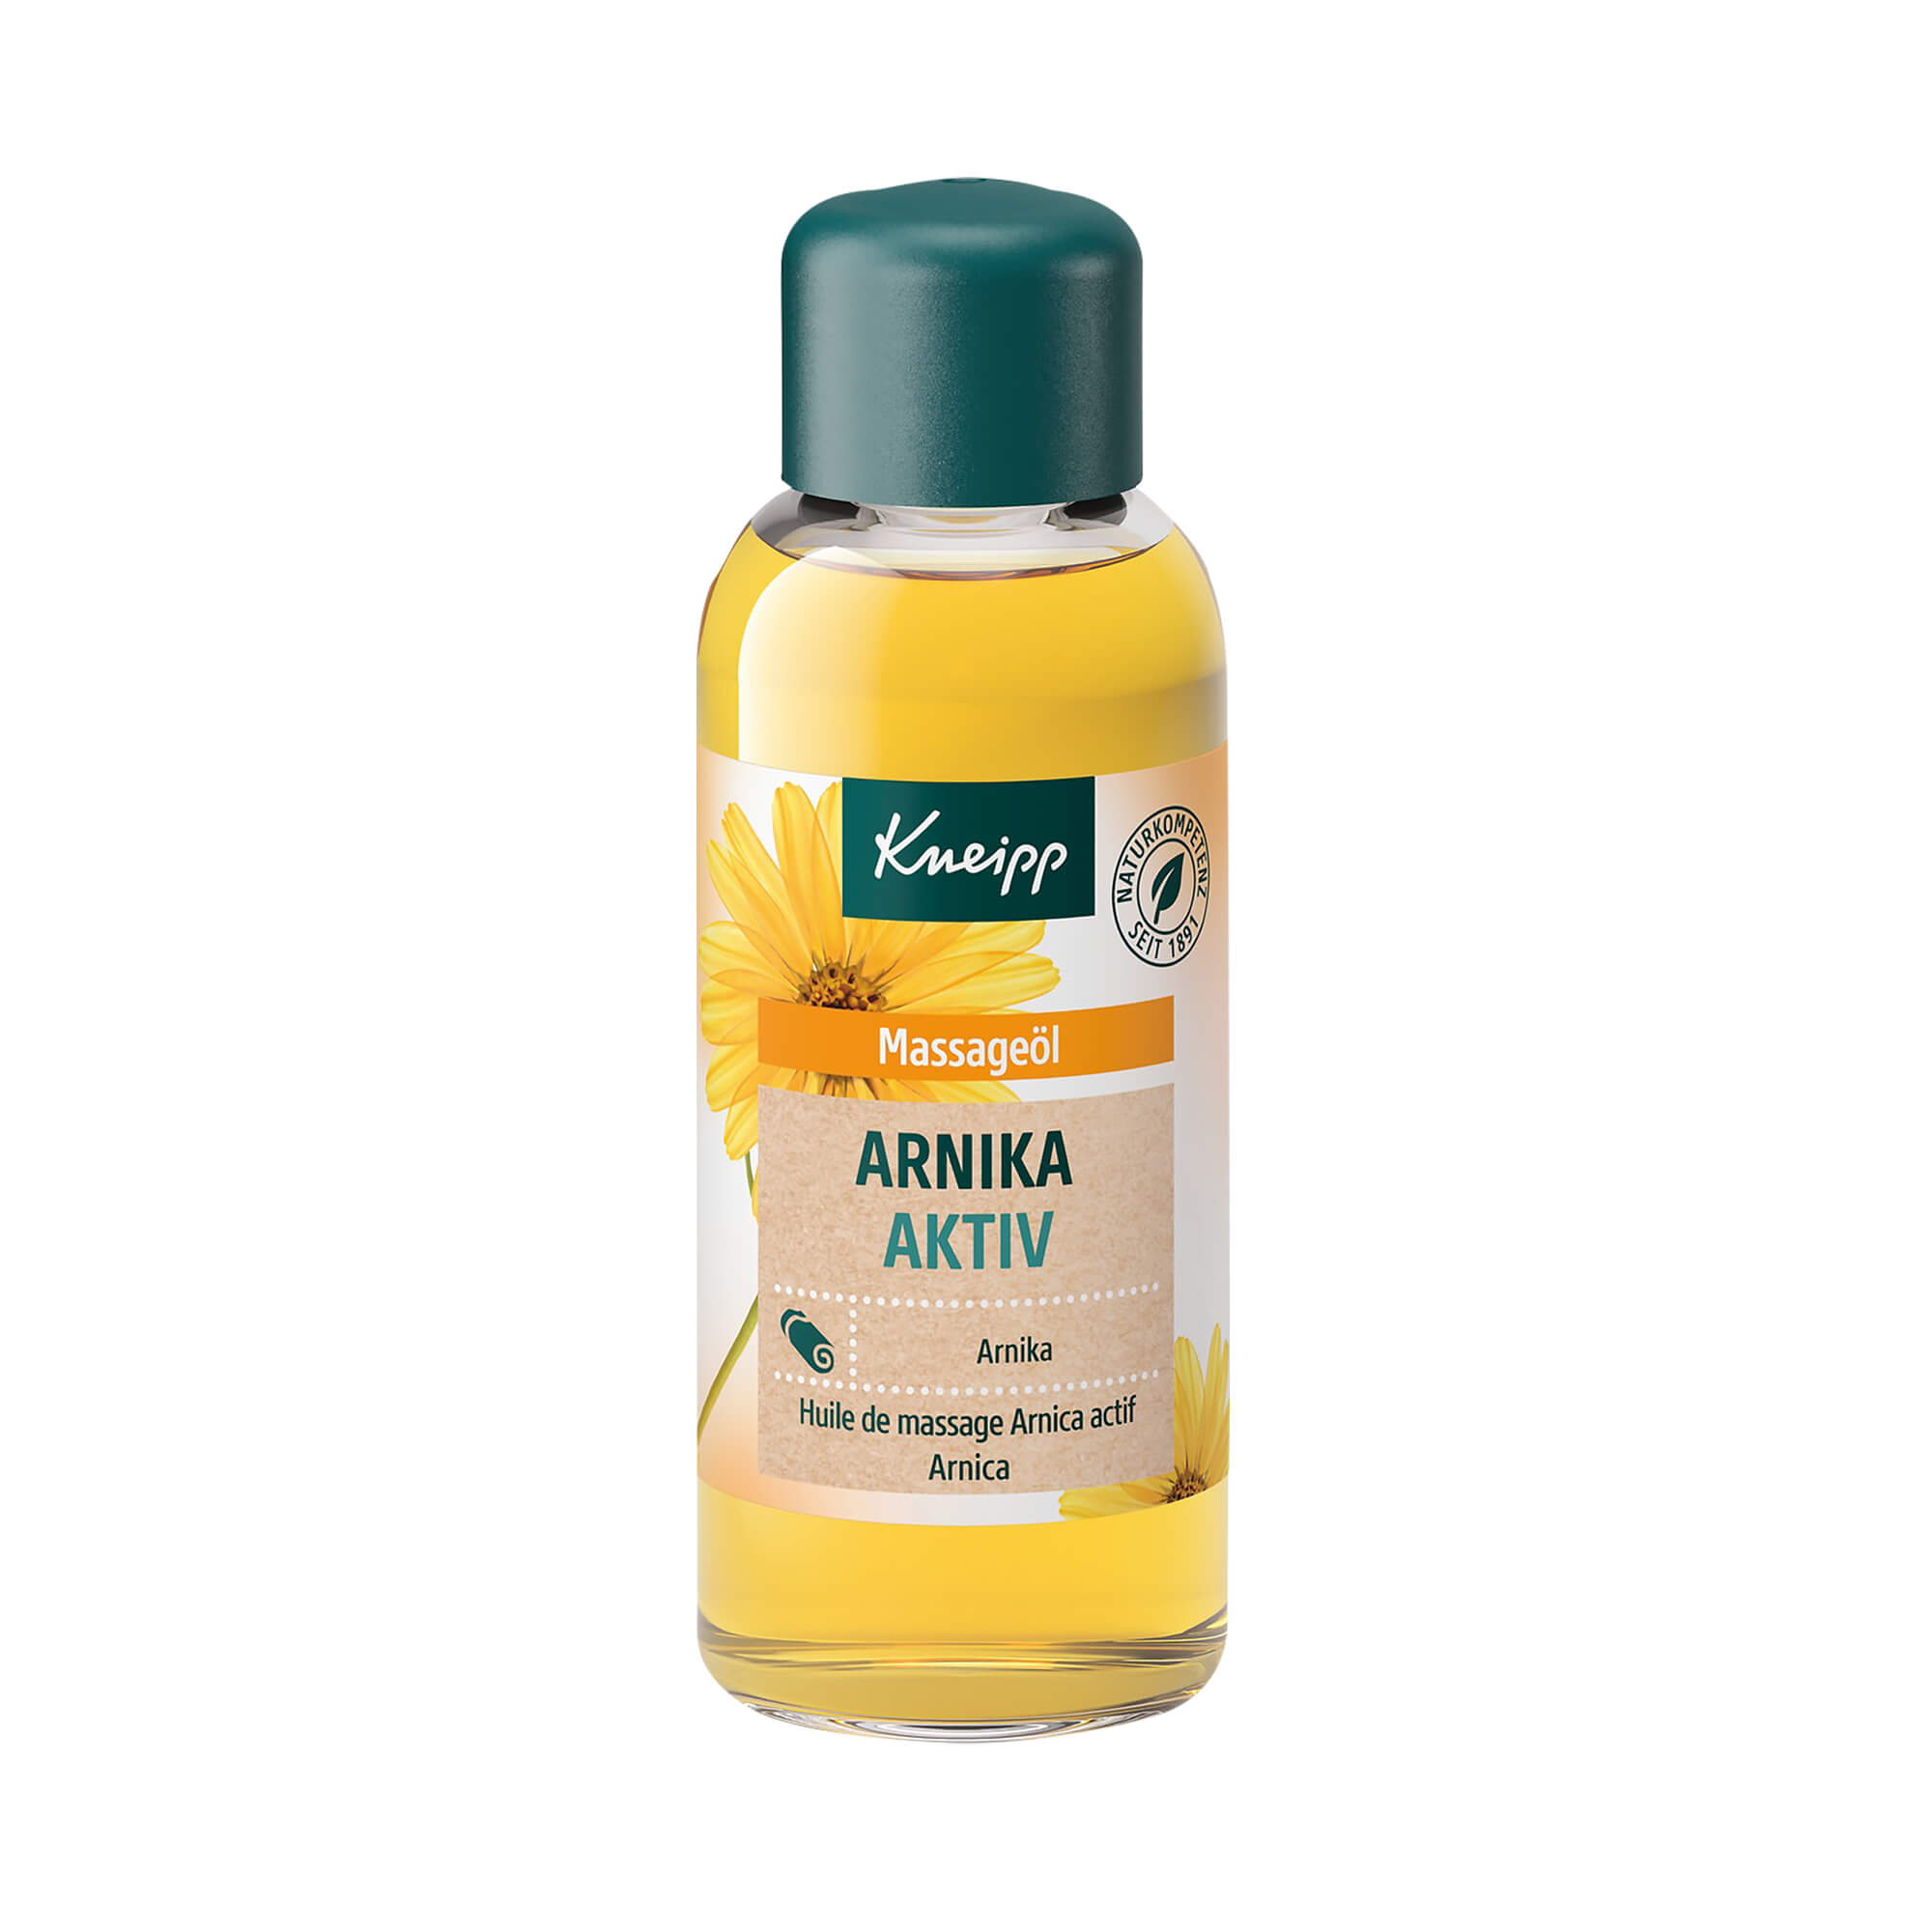 Wärmendes und revitalisierendes Massageöl. Mit Arnika und Sonnenblumenöl.